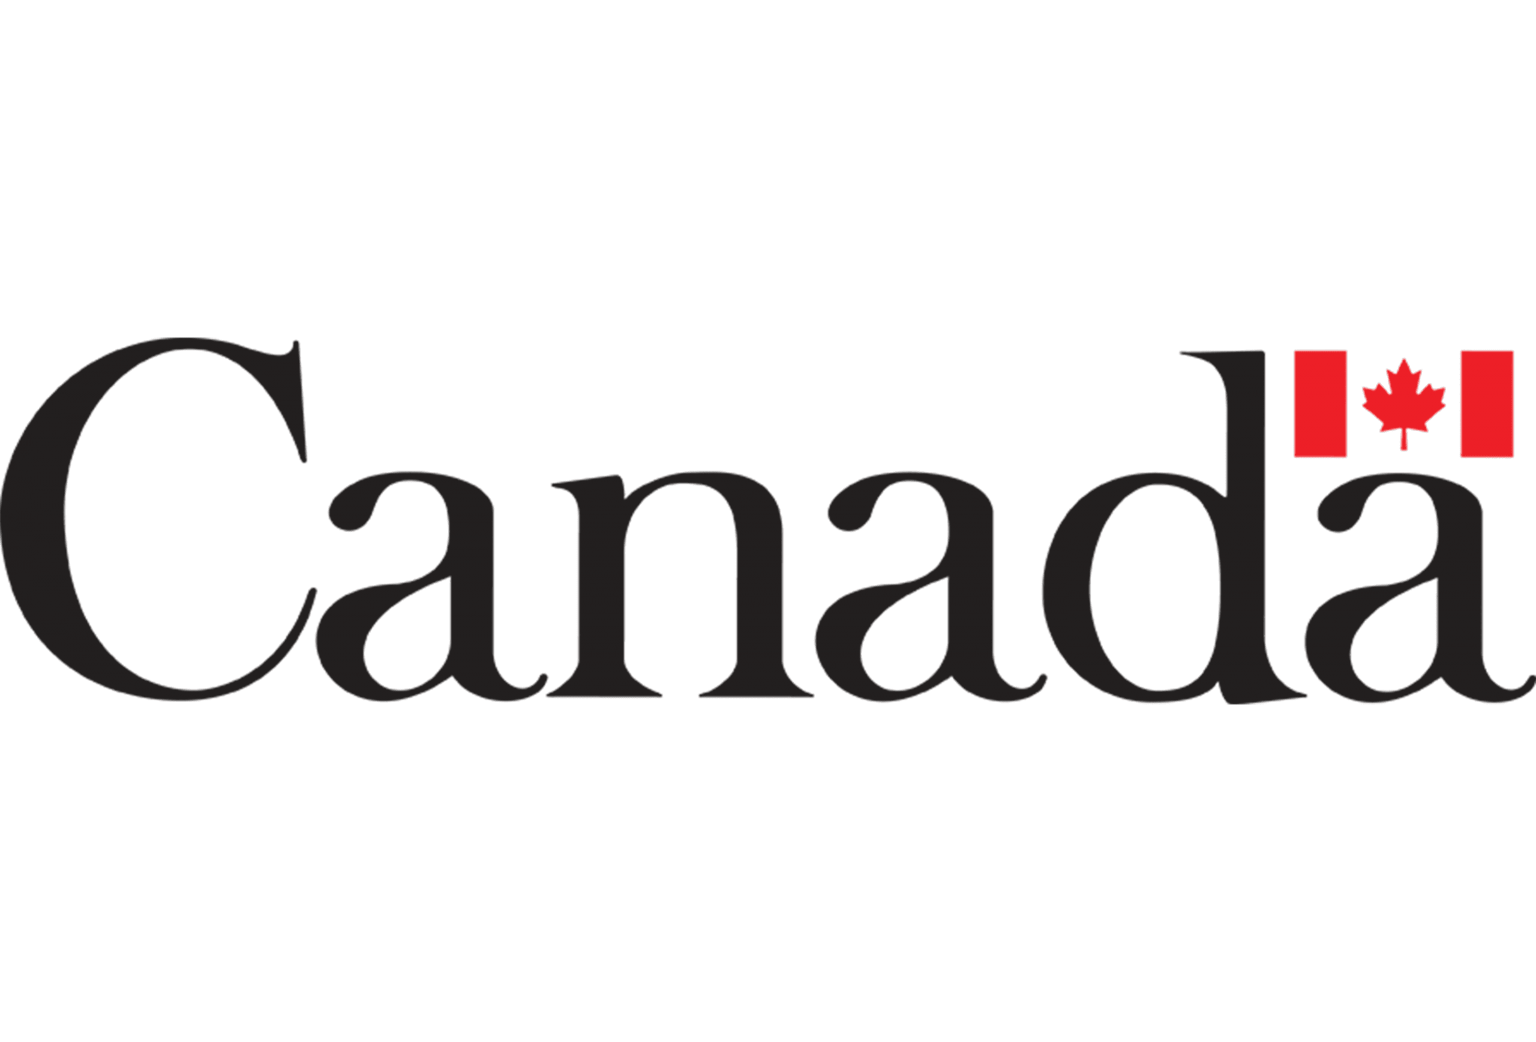 Canada Electronic Travel Authorization (eTA)